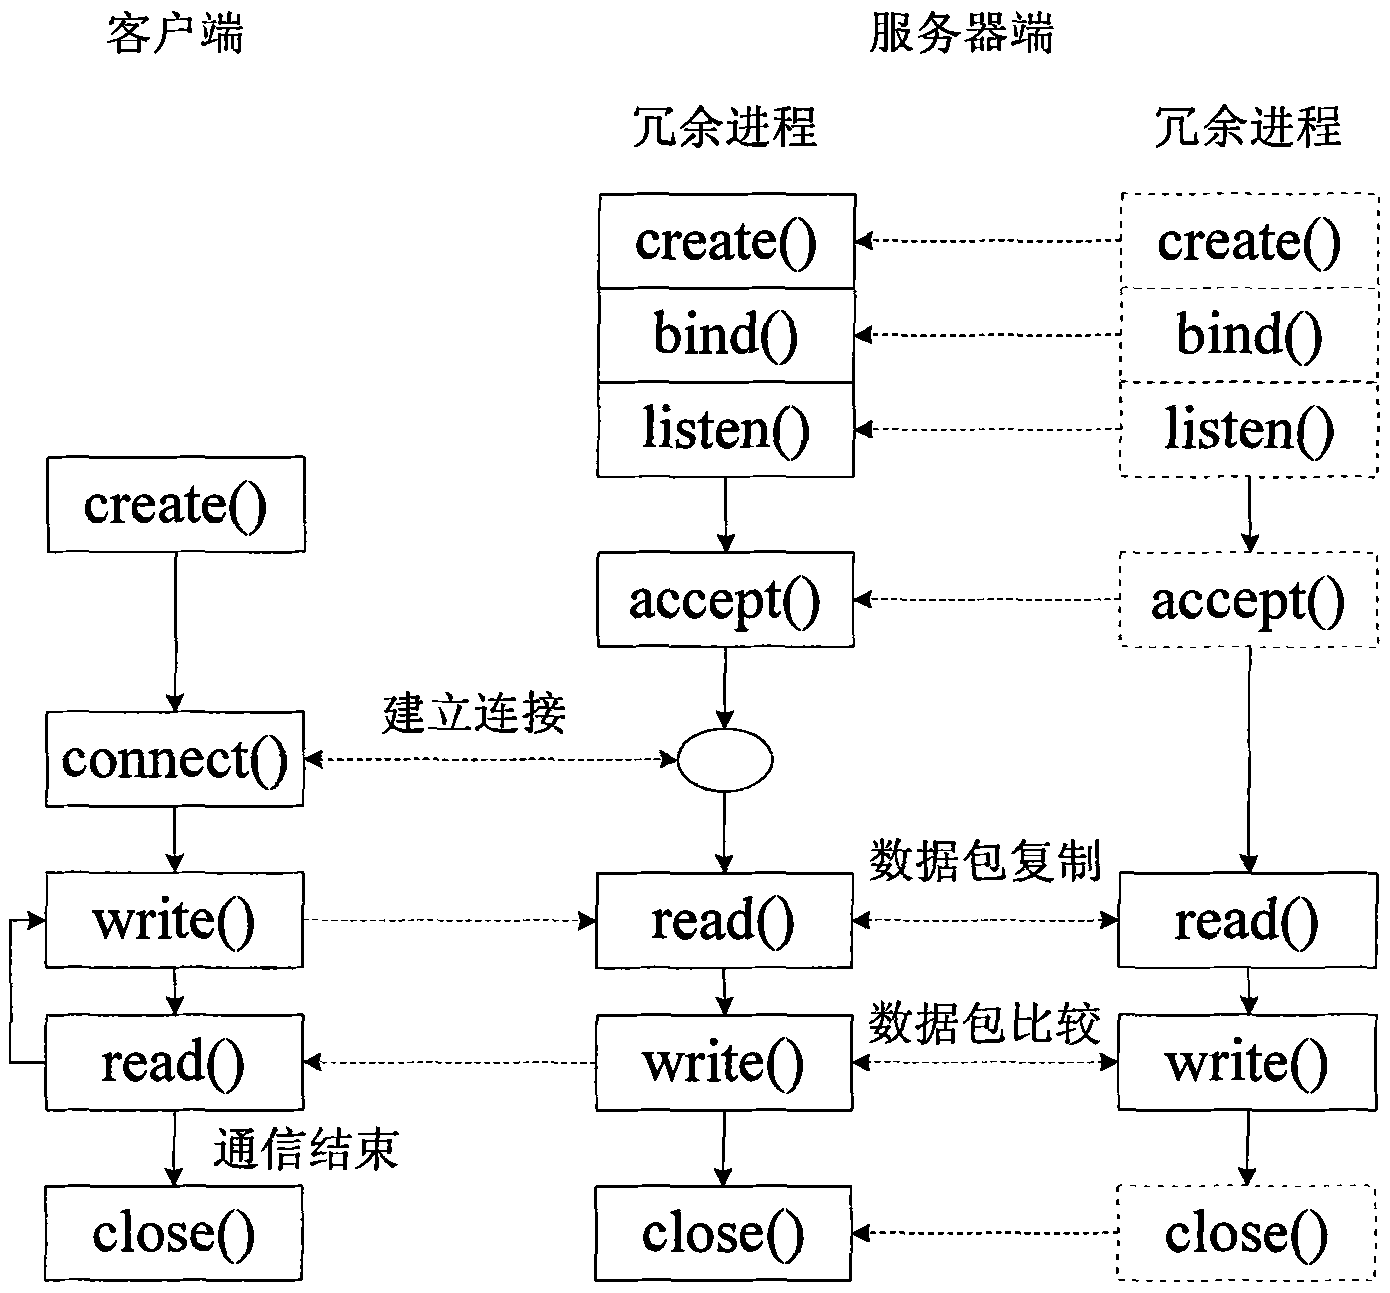 Grid synchronization method for fault tolerant computer system based on socket